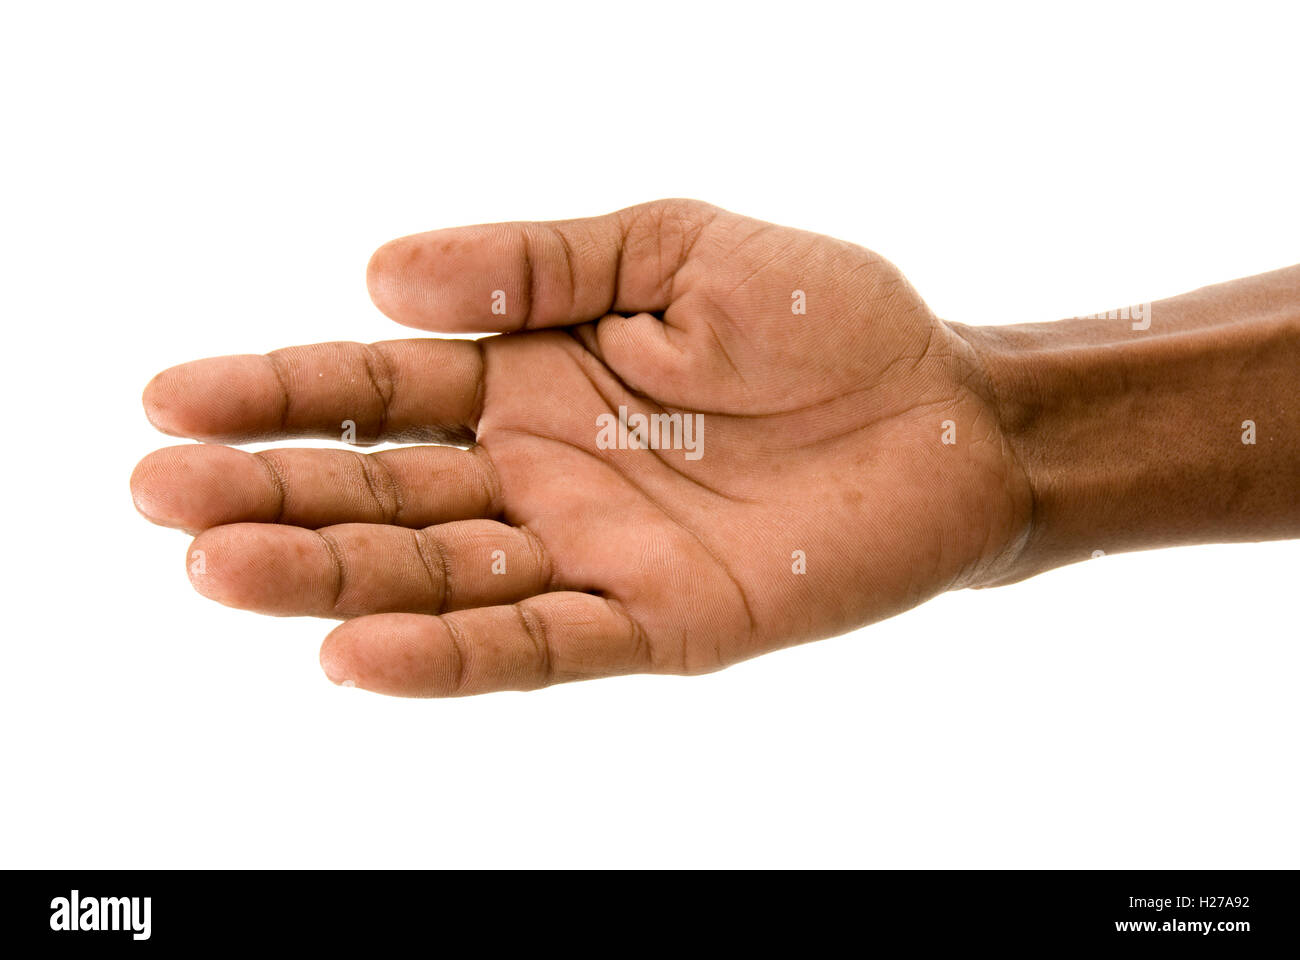 African la mano tesa in segno di amicizia o che potrebbe essere di accattonaggio o per chiedere aiuto. Foto Stock